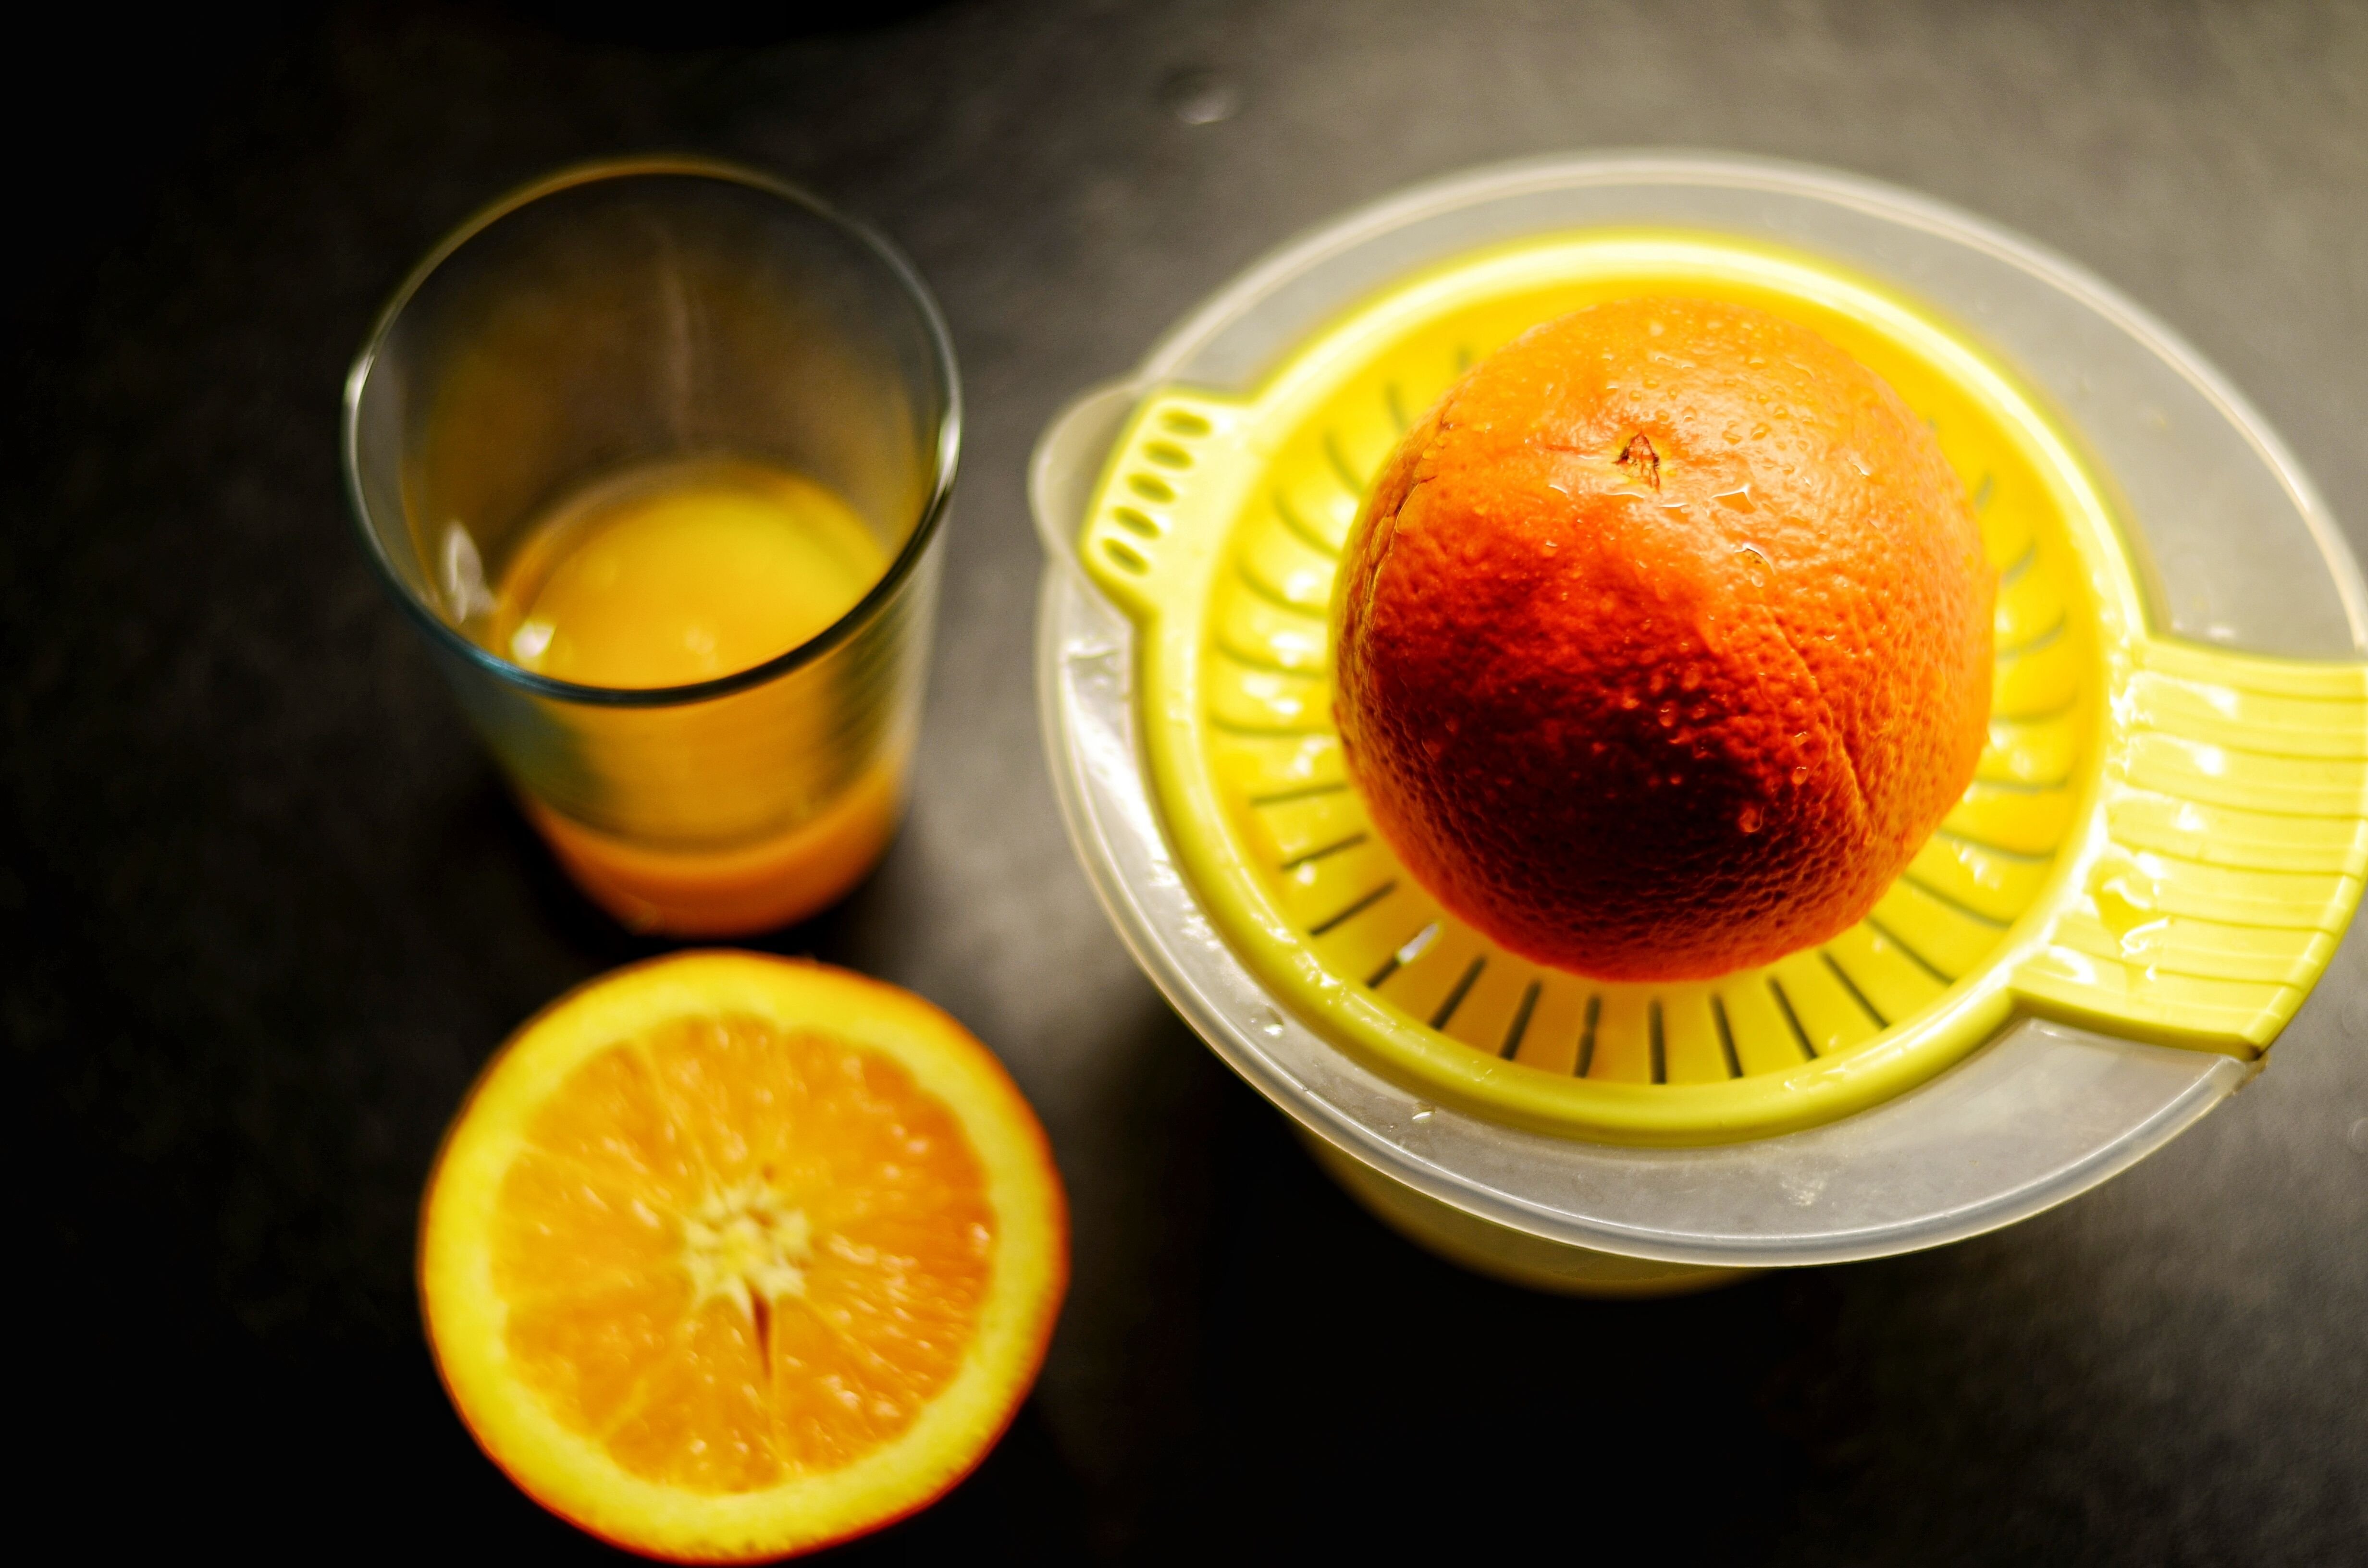 Freshly squeezed orange juice. | Source: Shutterstock